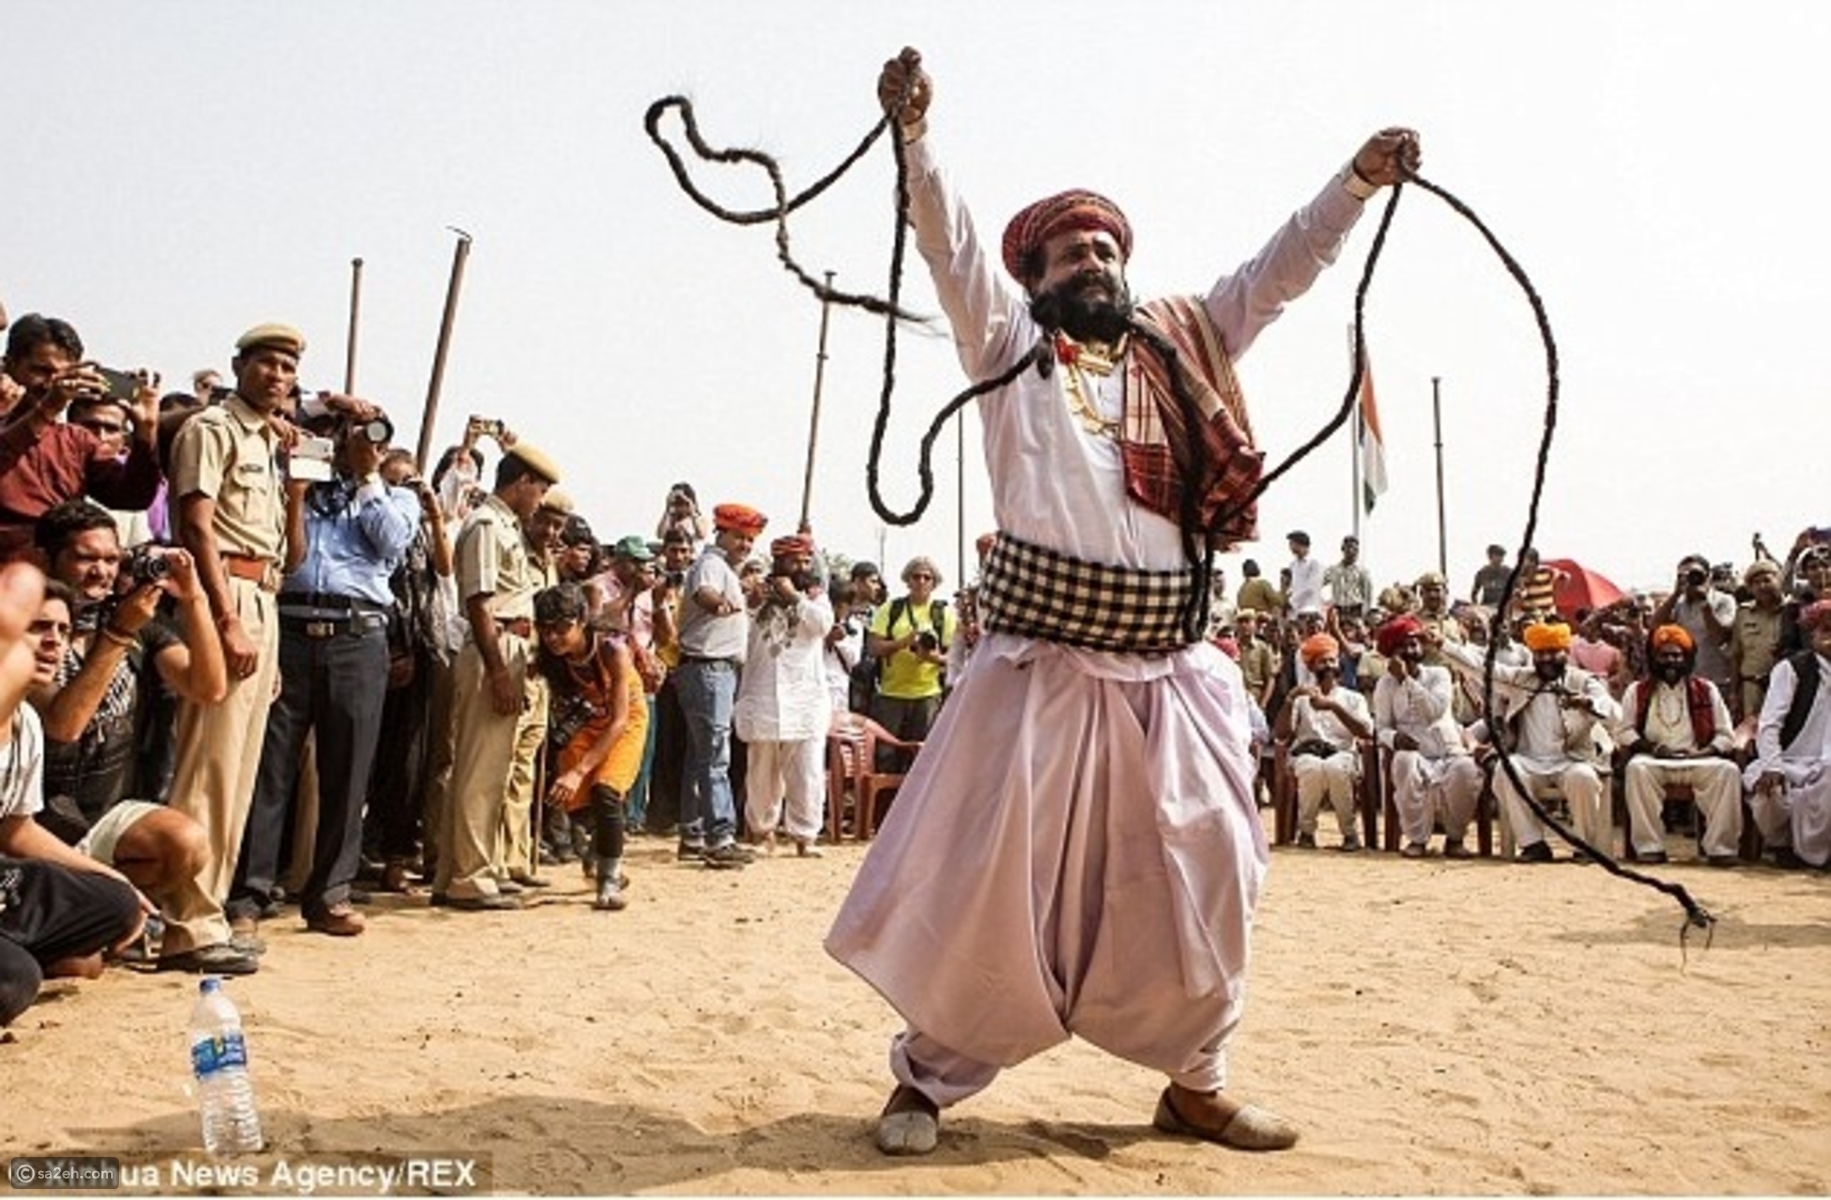 بالصور: مسابقة أطول شارب في الهند